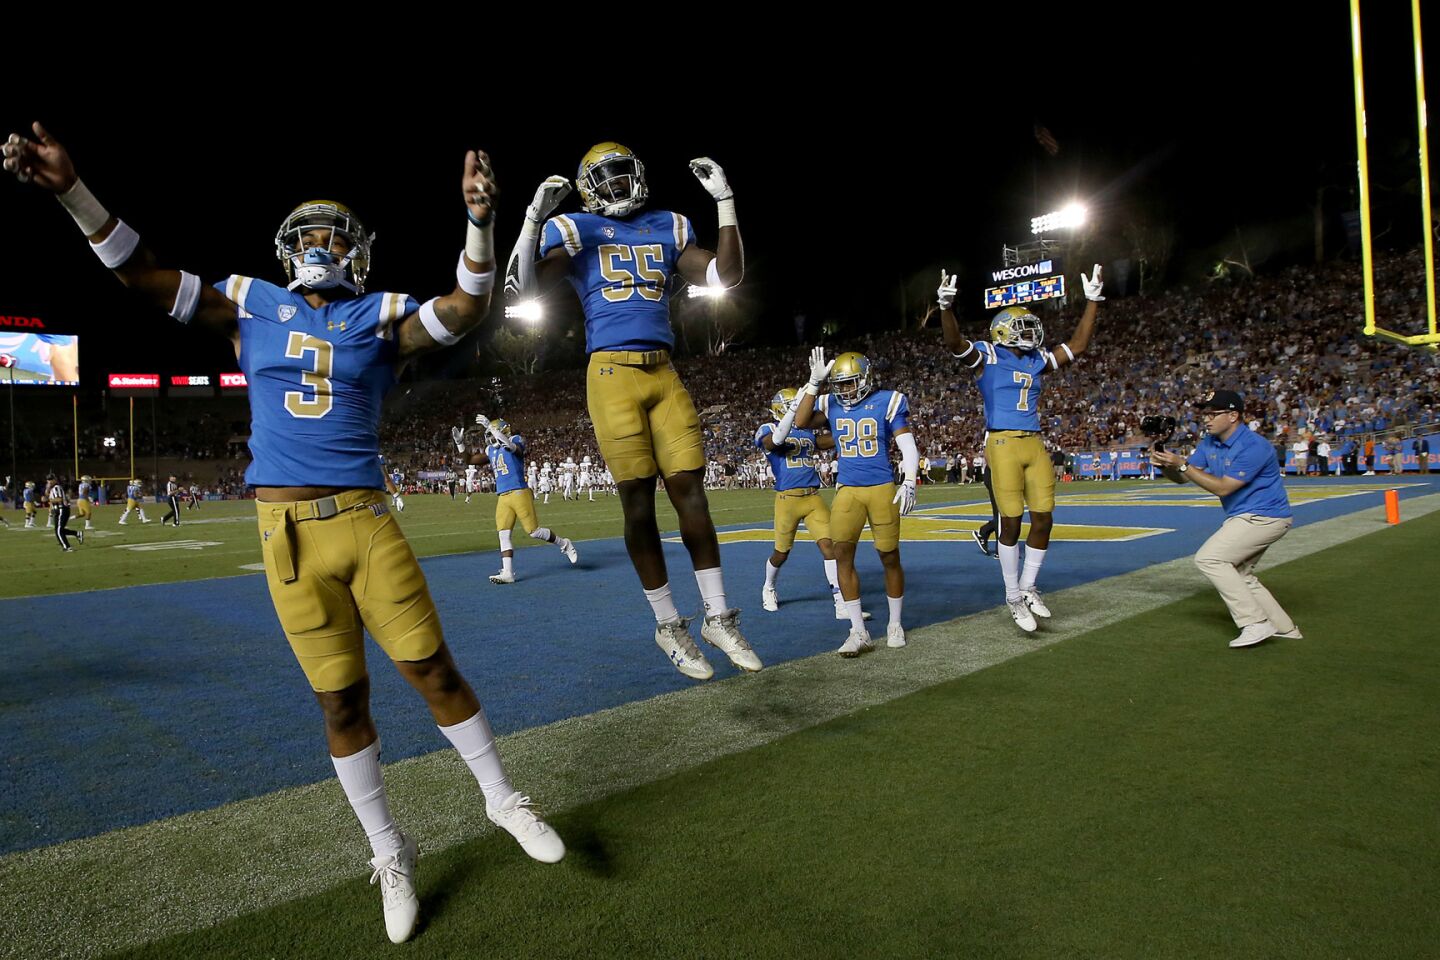 UCLA celebrates